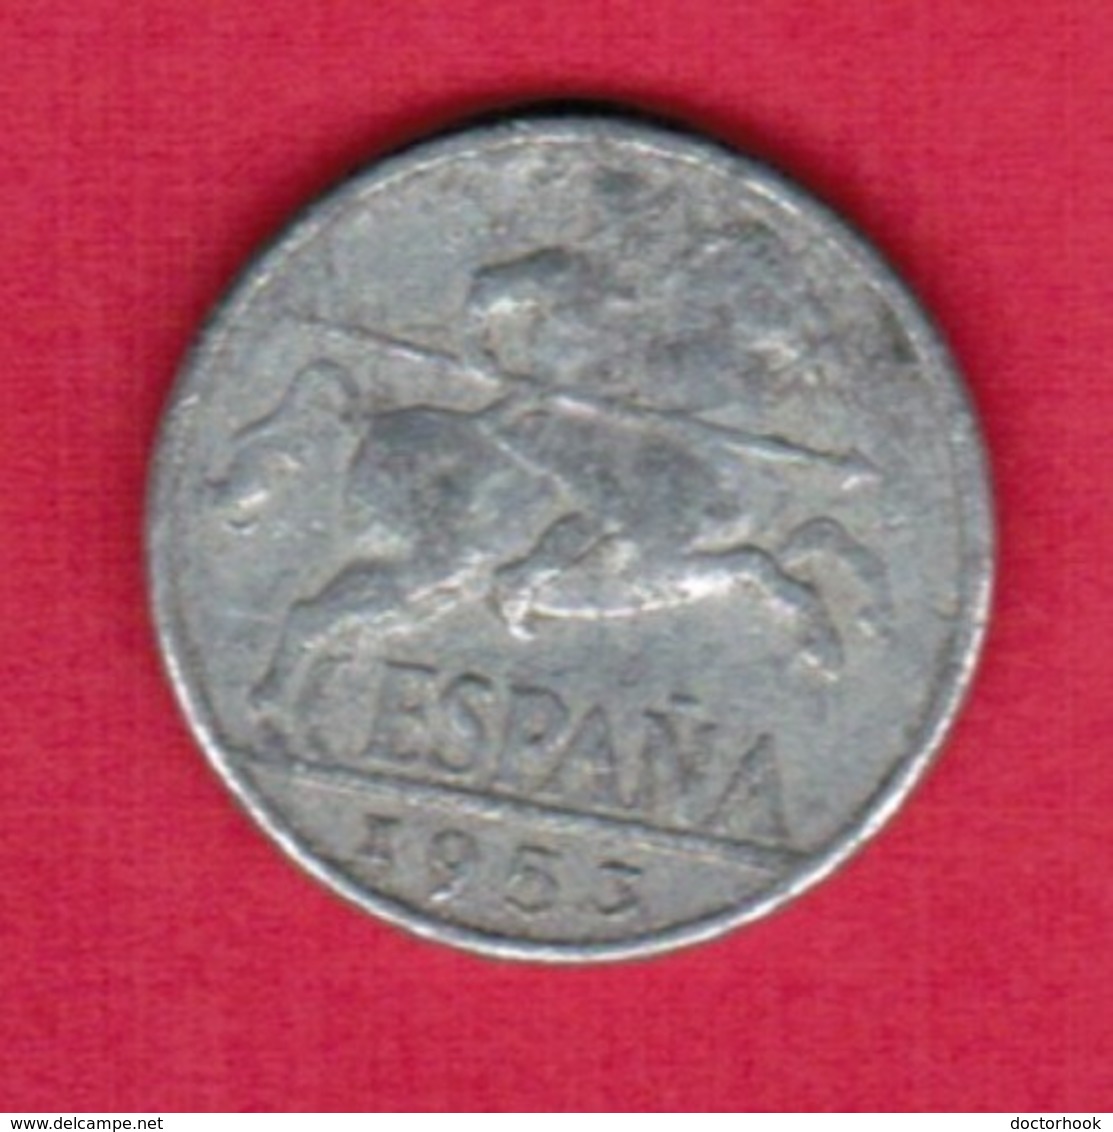 SPAIN   10 CENTIMOS 1953 (KM # 766) #5373 - 10 Centesimi